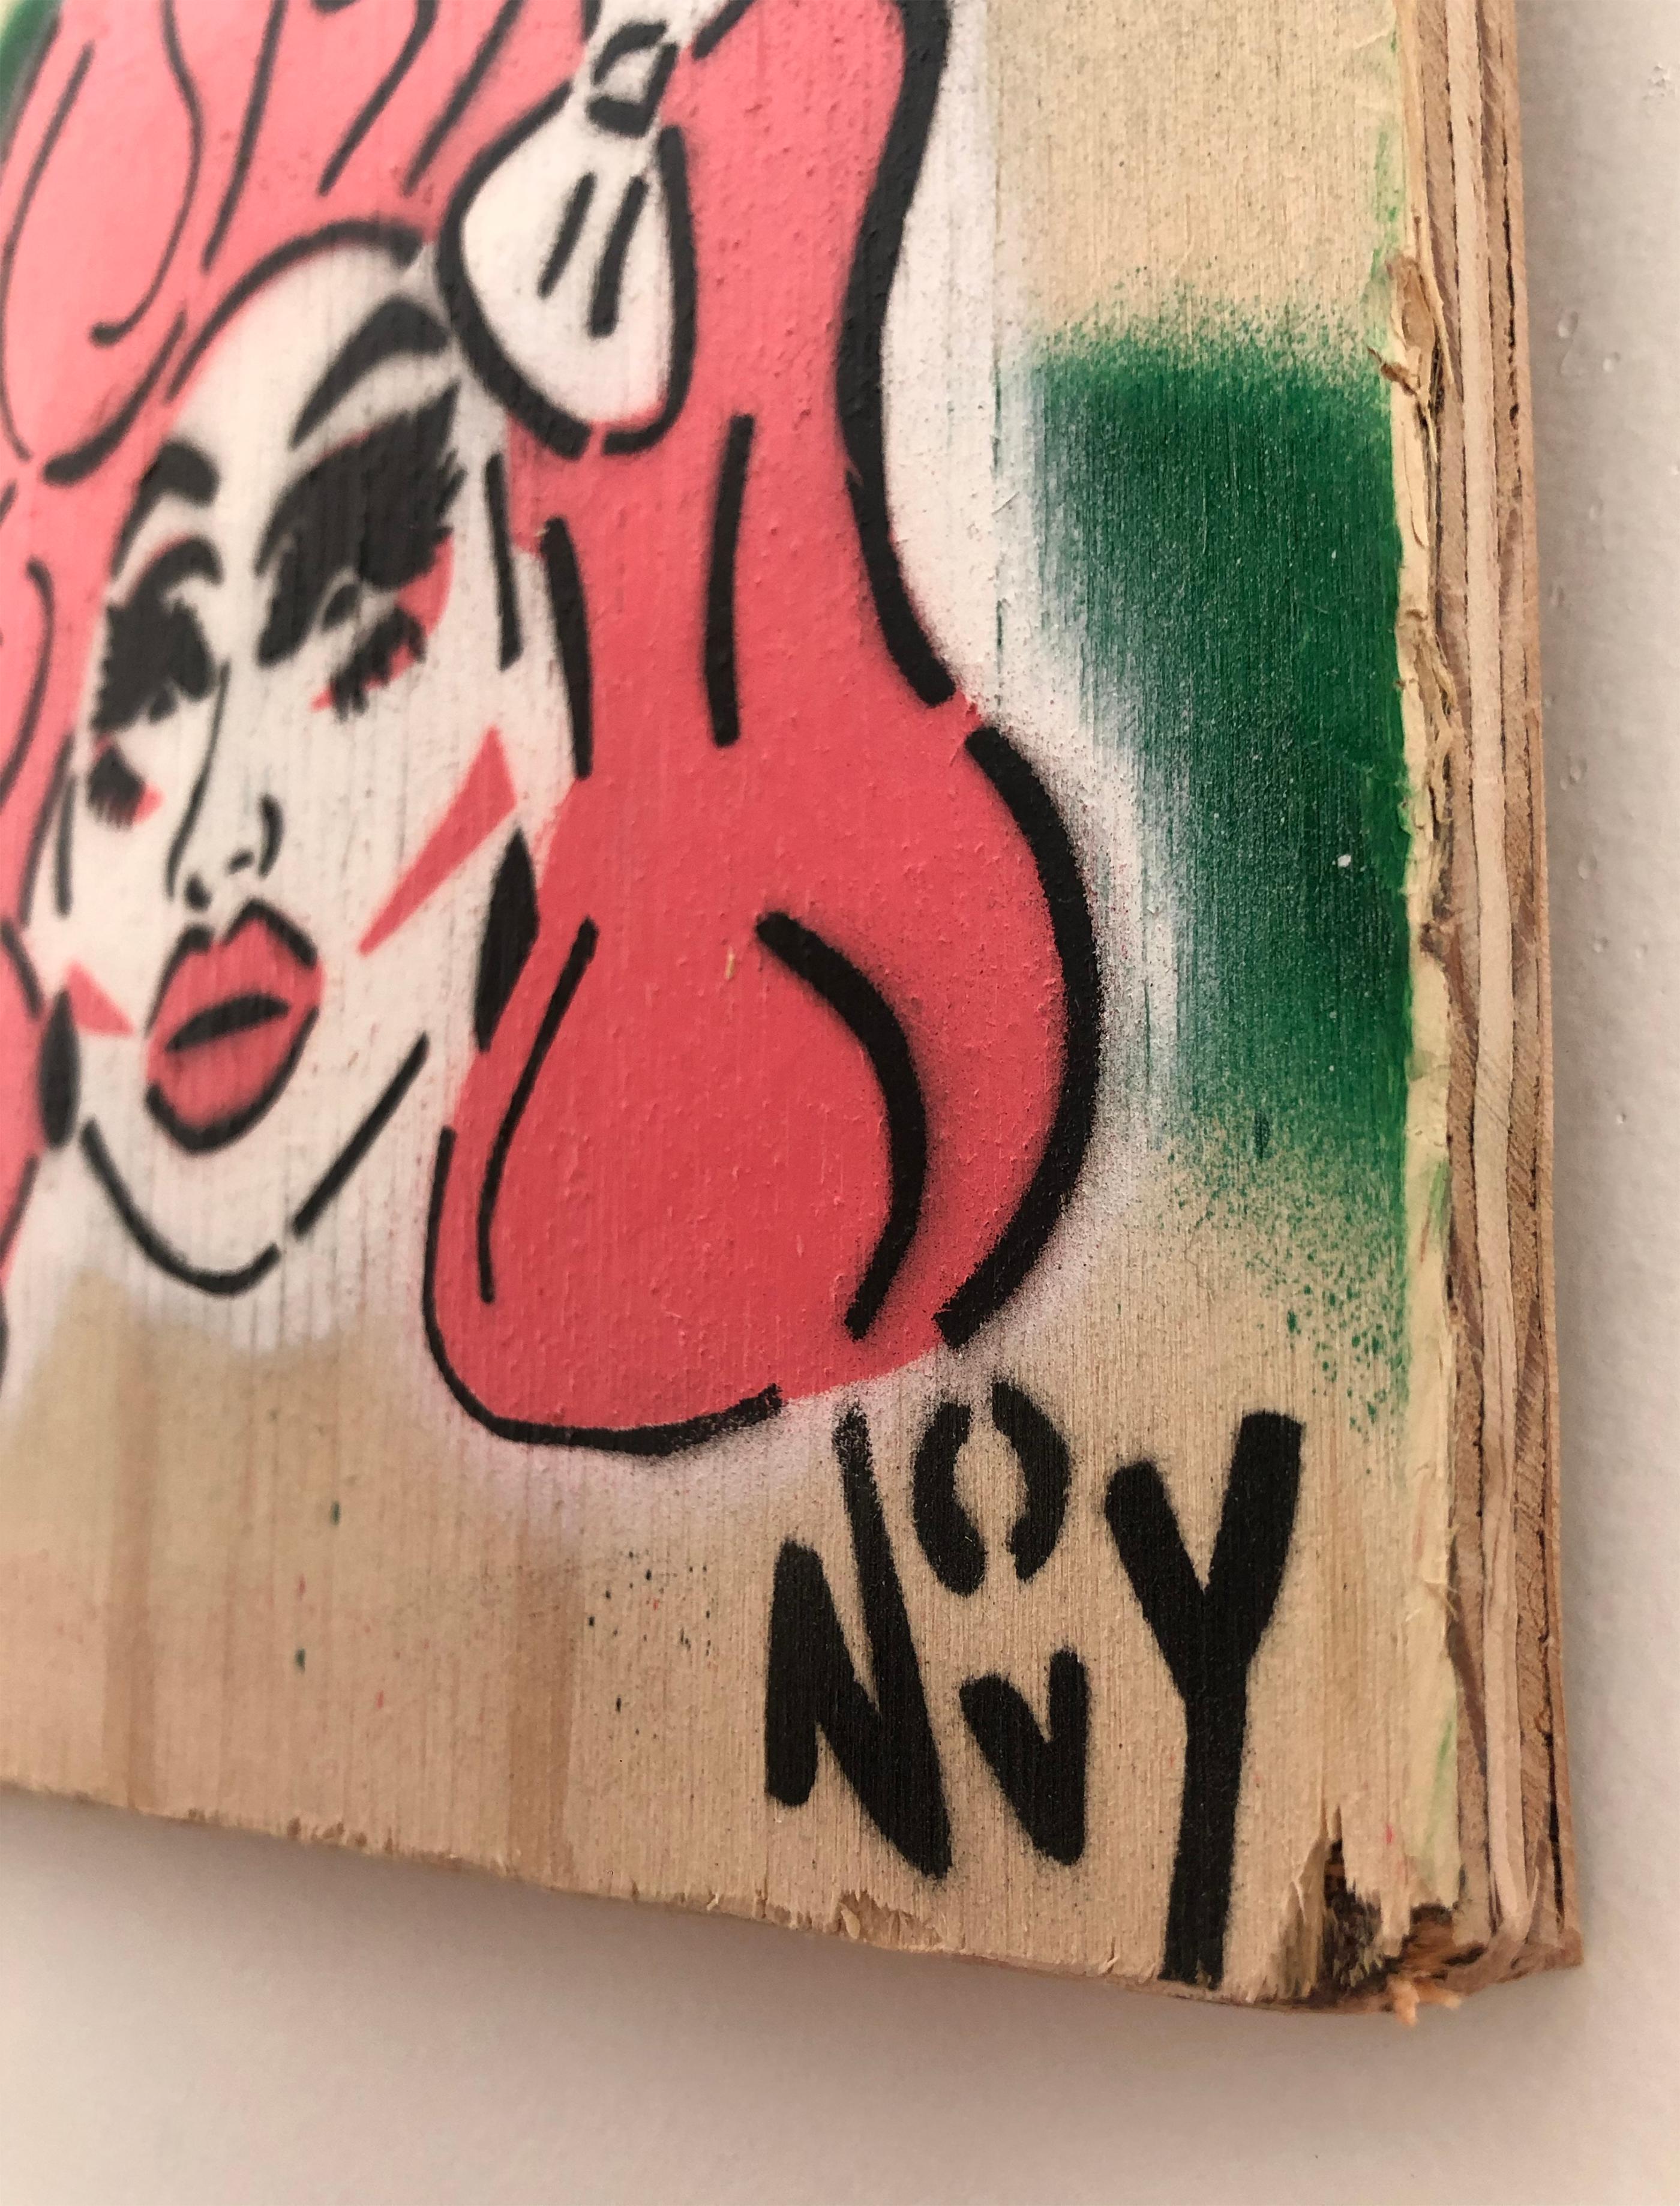 
L'art de rue de Jeremy Novy, unique en son genre, est riche en réflexions sociales. Novy a combattu le manque de représentation homophobe en célébrant l'iconographie gay, apportant jovialité et chaleur aux espaces urbains désaffectés.

Depuis qu'il